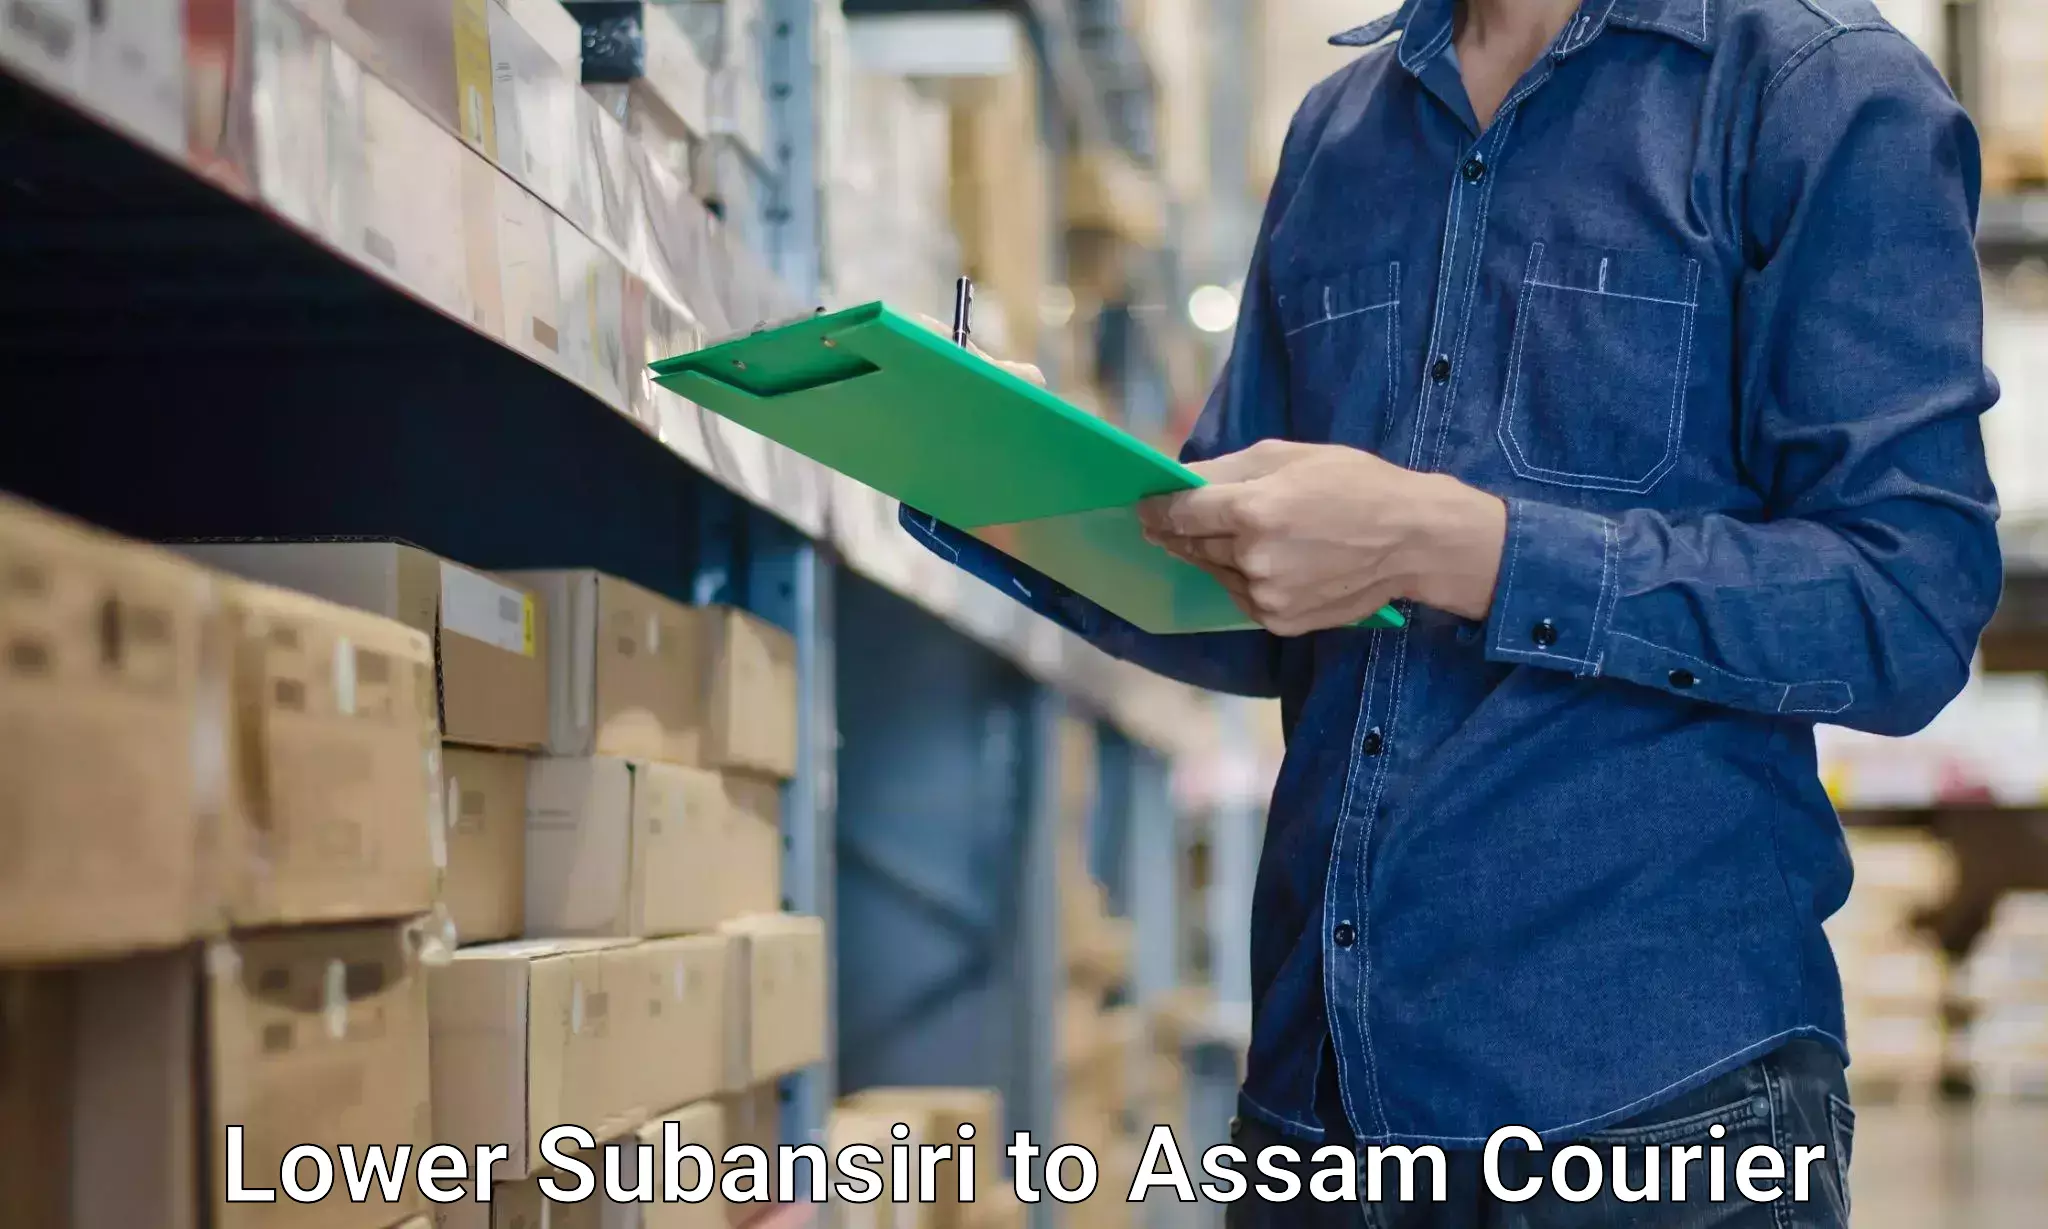 Furniture handling services Lower Subansiri to Sivasagar